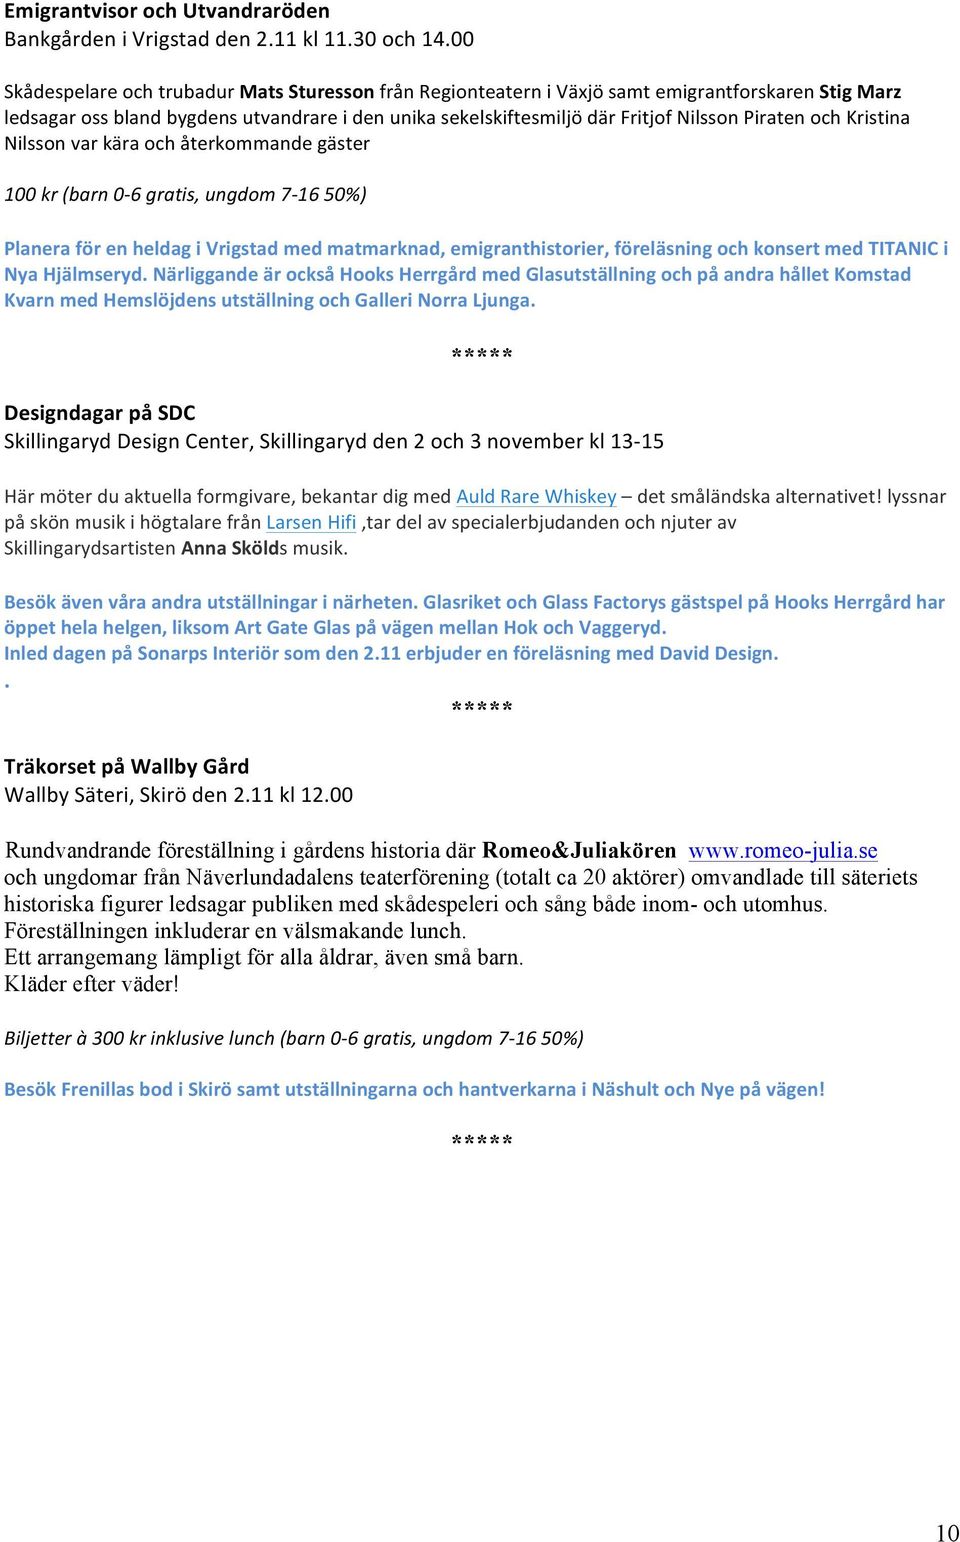 Nilssonvarkäraochåterkommandegäster 100kr(barn0,6gratis,ungdom7,1650) PlaneraförenheldagiVrigstadmedmatmarknad,emigranthistorier,föreläsningochkonsertmedTITANICi NyaHjälmseryd.